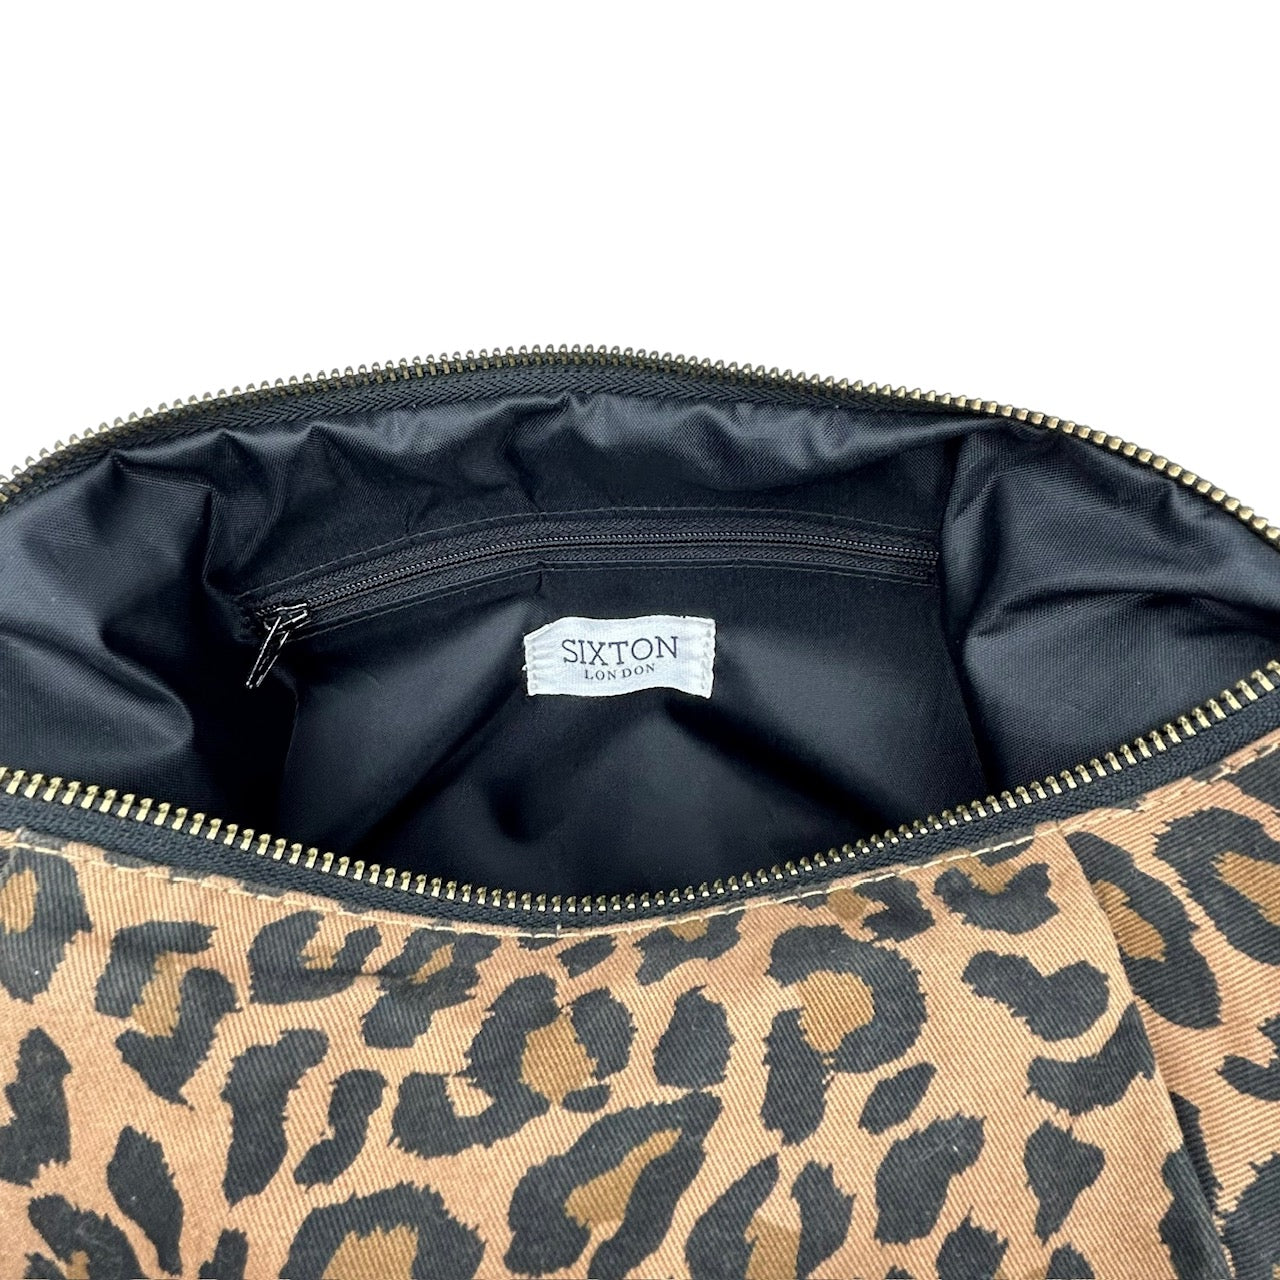 Leopard sling bag - large